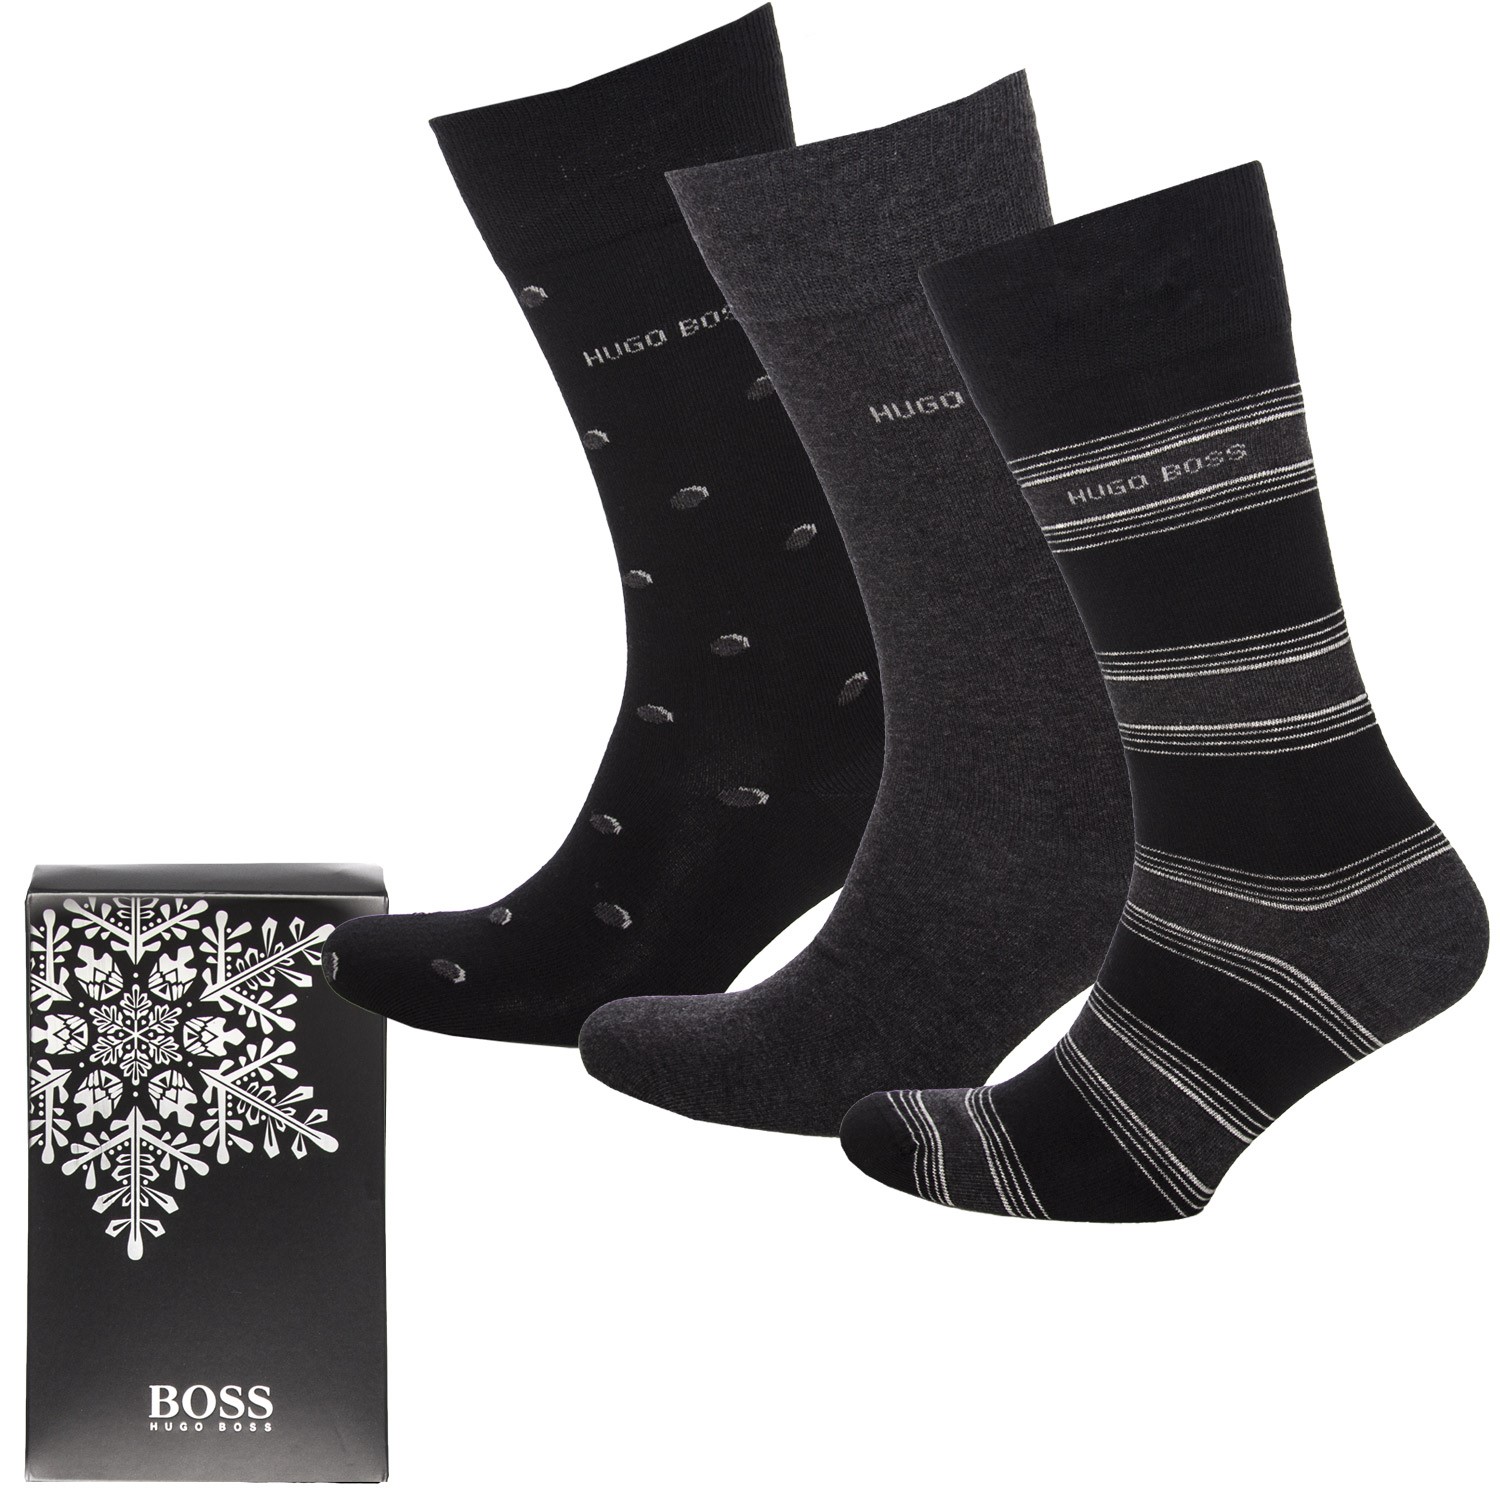 BOSS RS Sock Gift Set